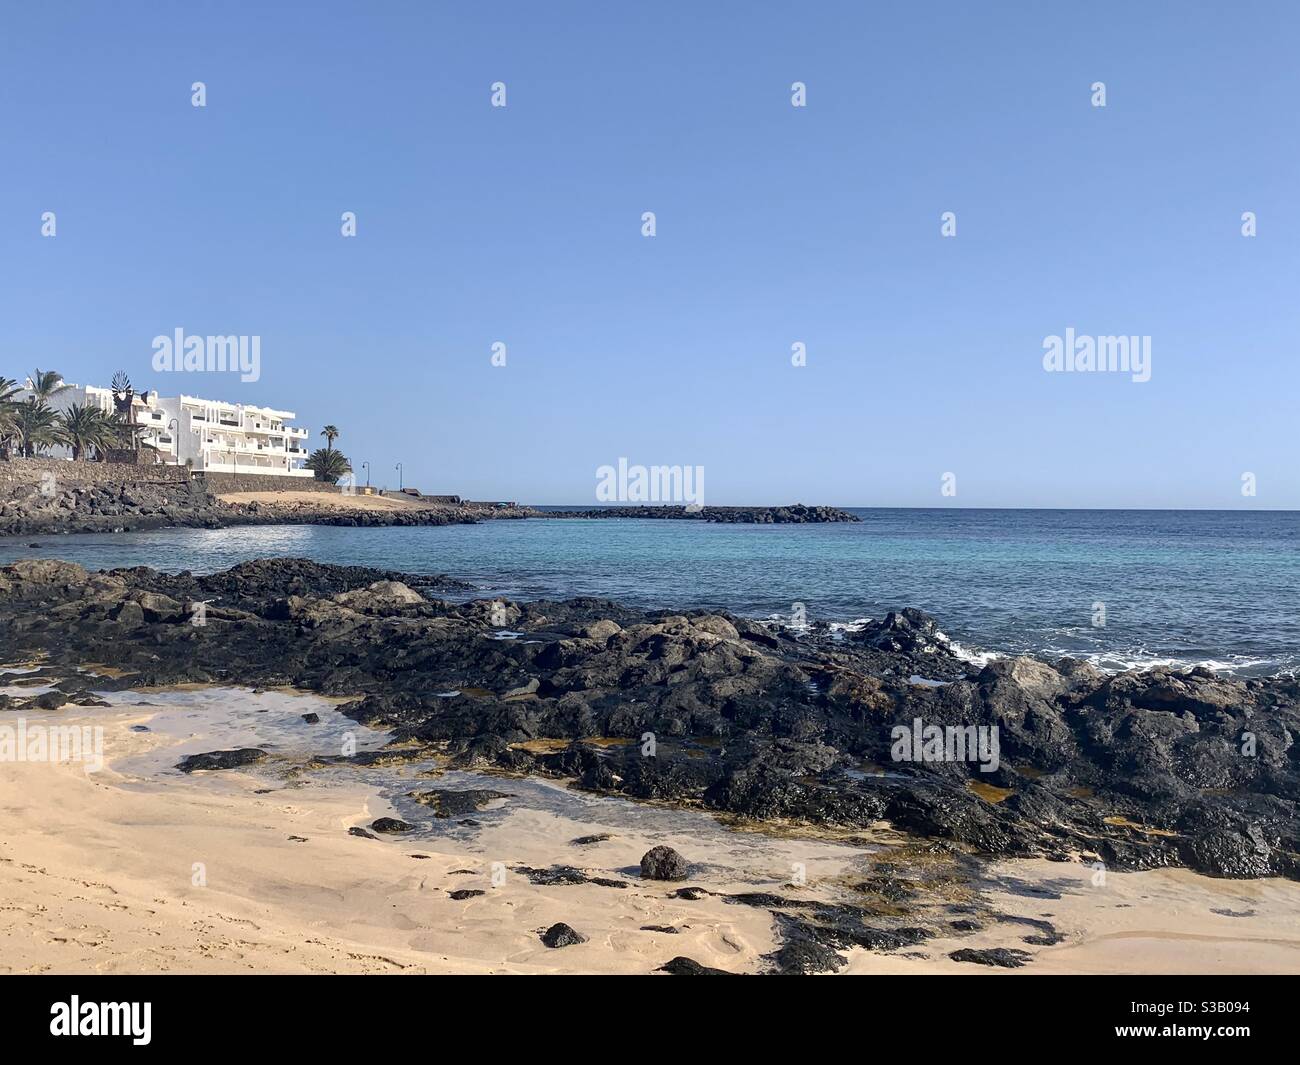 Playa de Jablillo, Costa Teguise, Lanzarote. October 2020 Stock Photo